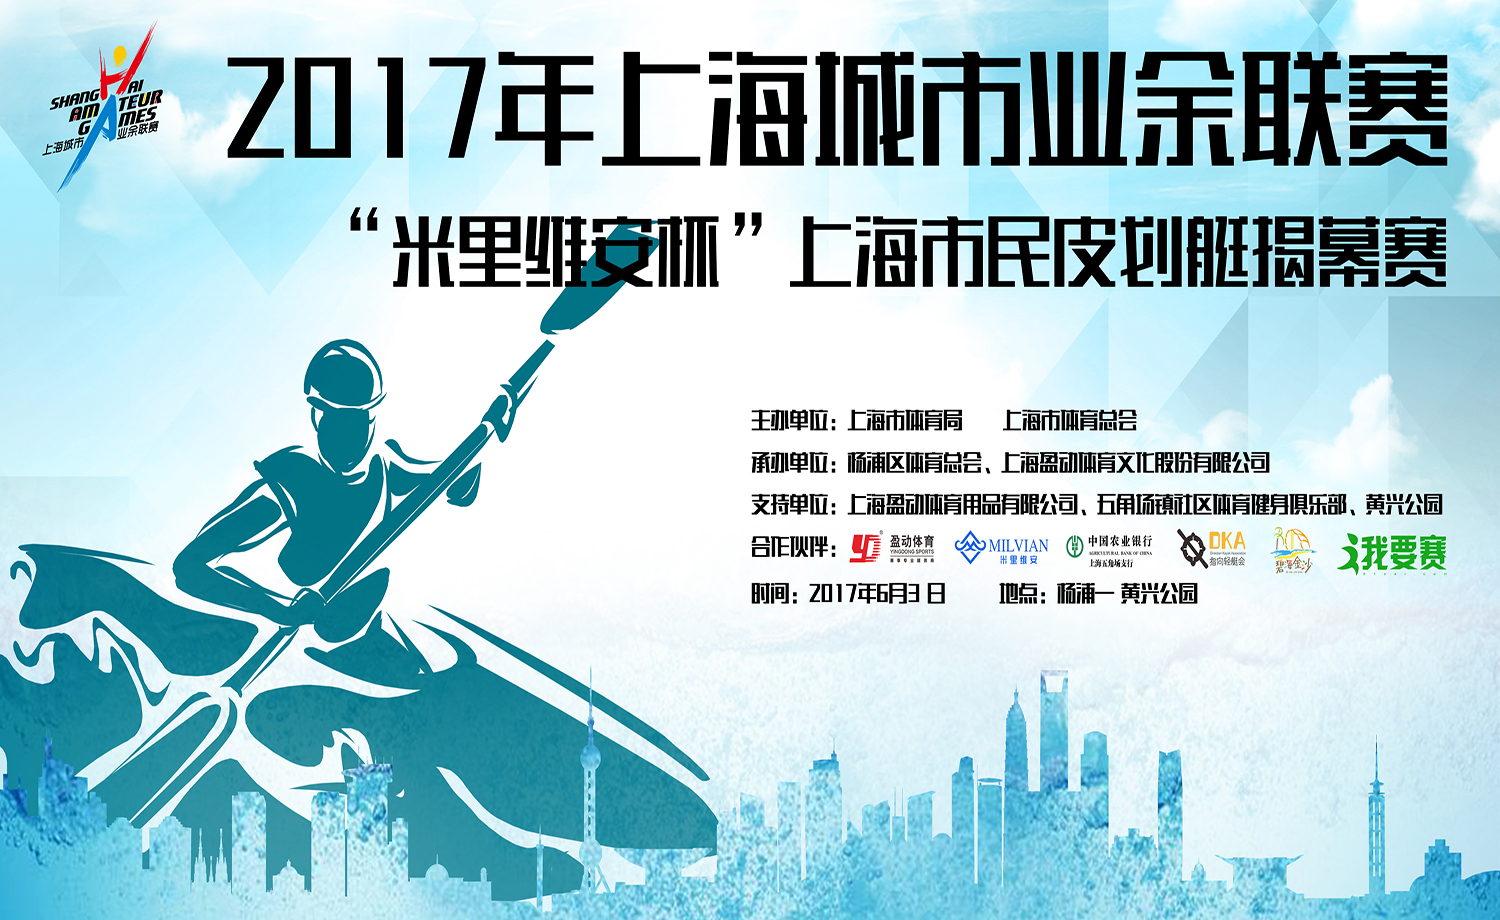 2017年上海城市业余联赛 “米里维安杯”上海市民皮划艇